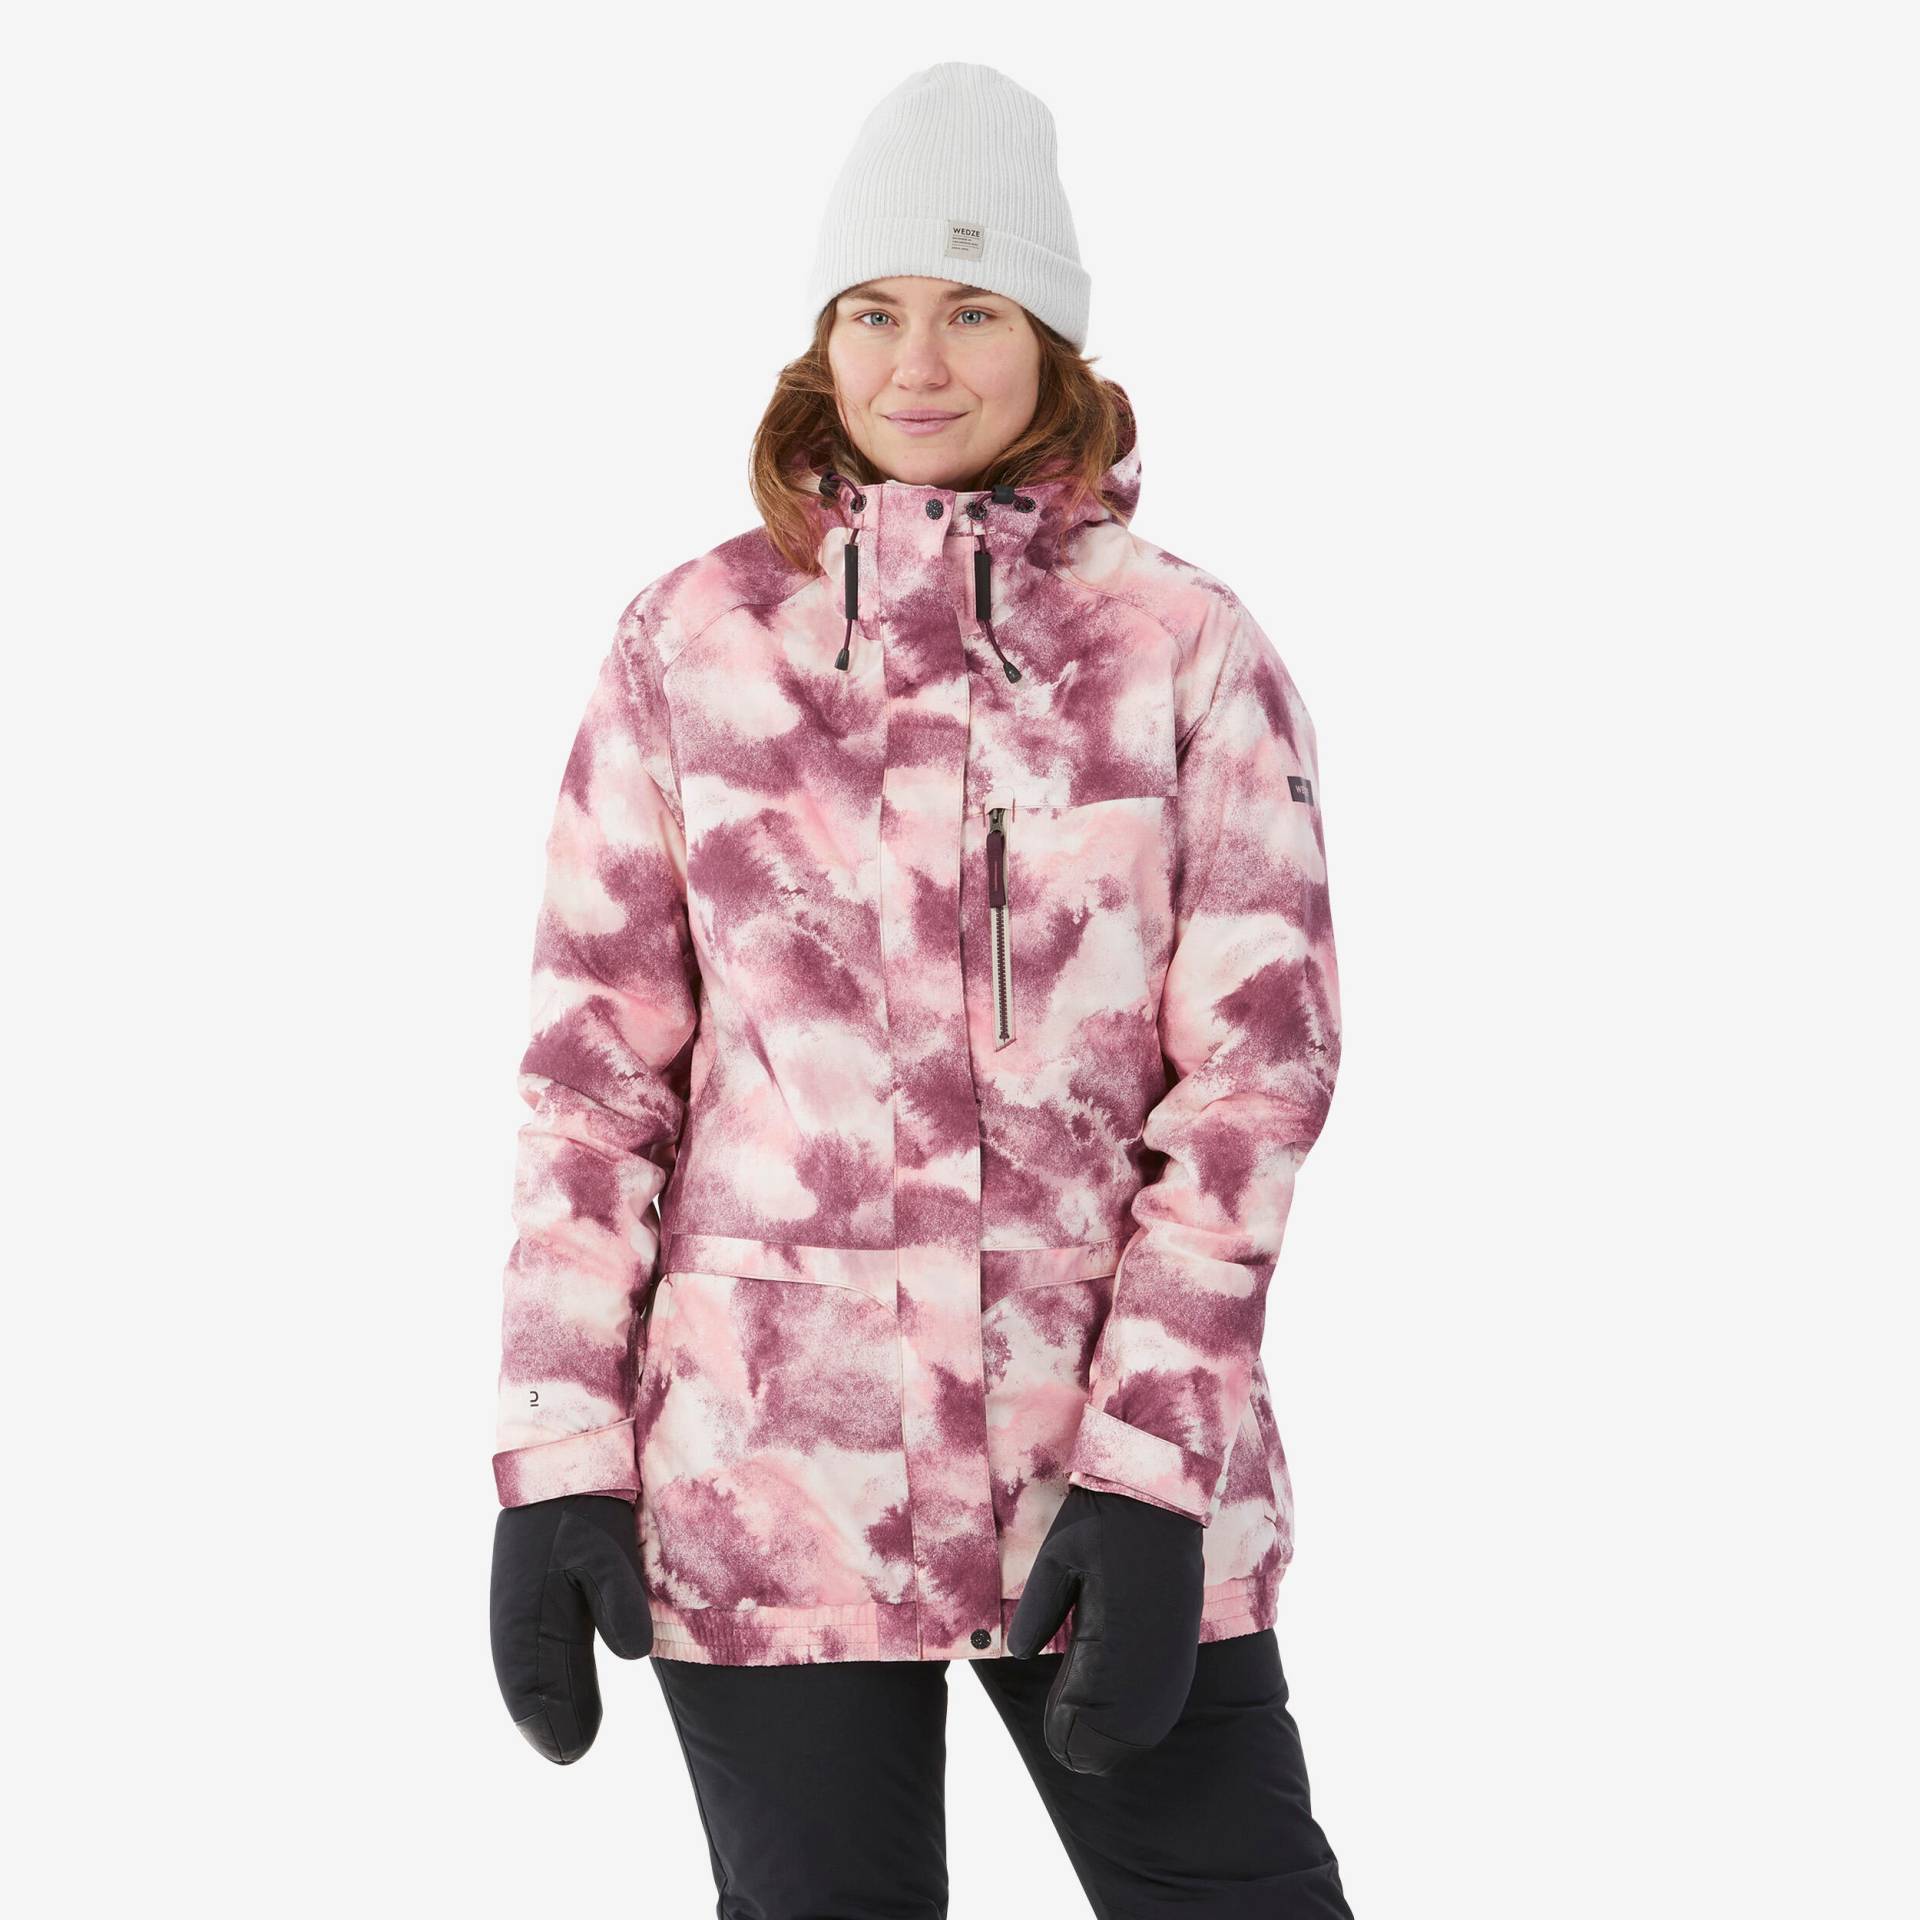 Snowboardjacke Damen - SNB 100 rosa von DREAMSCAPE